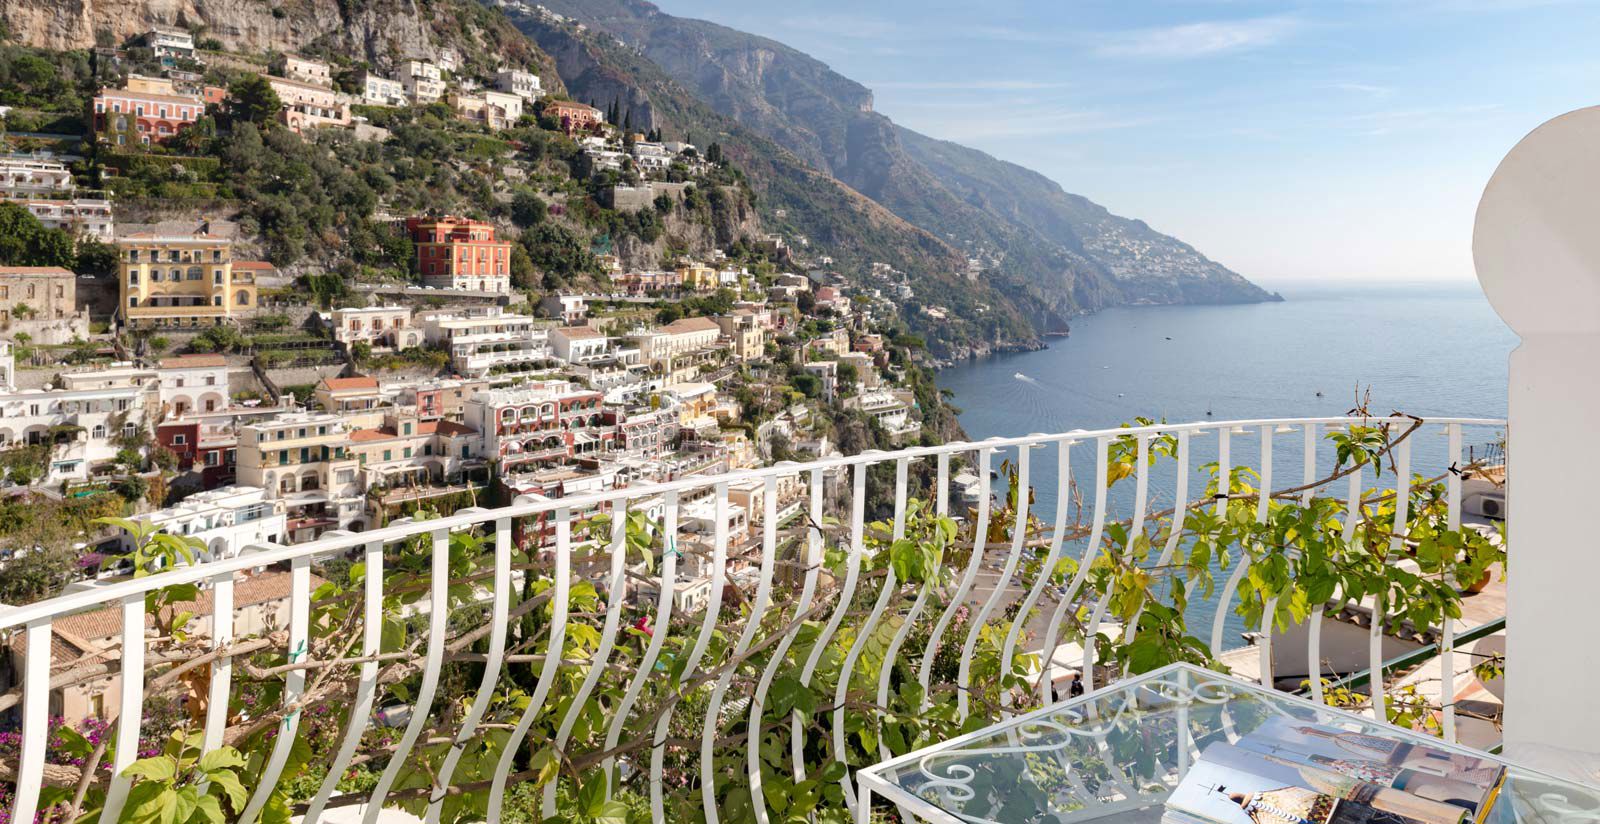 Your honeymoon in Positano on the Amalfi Coast 2